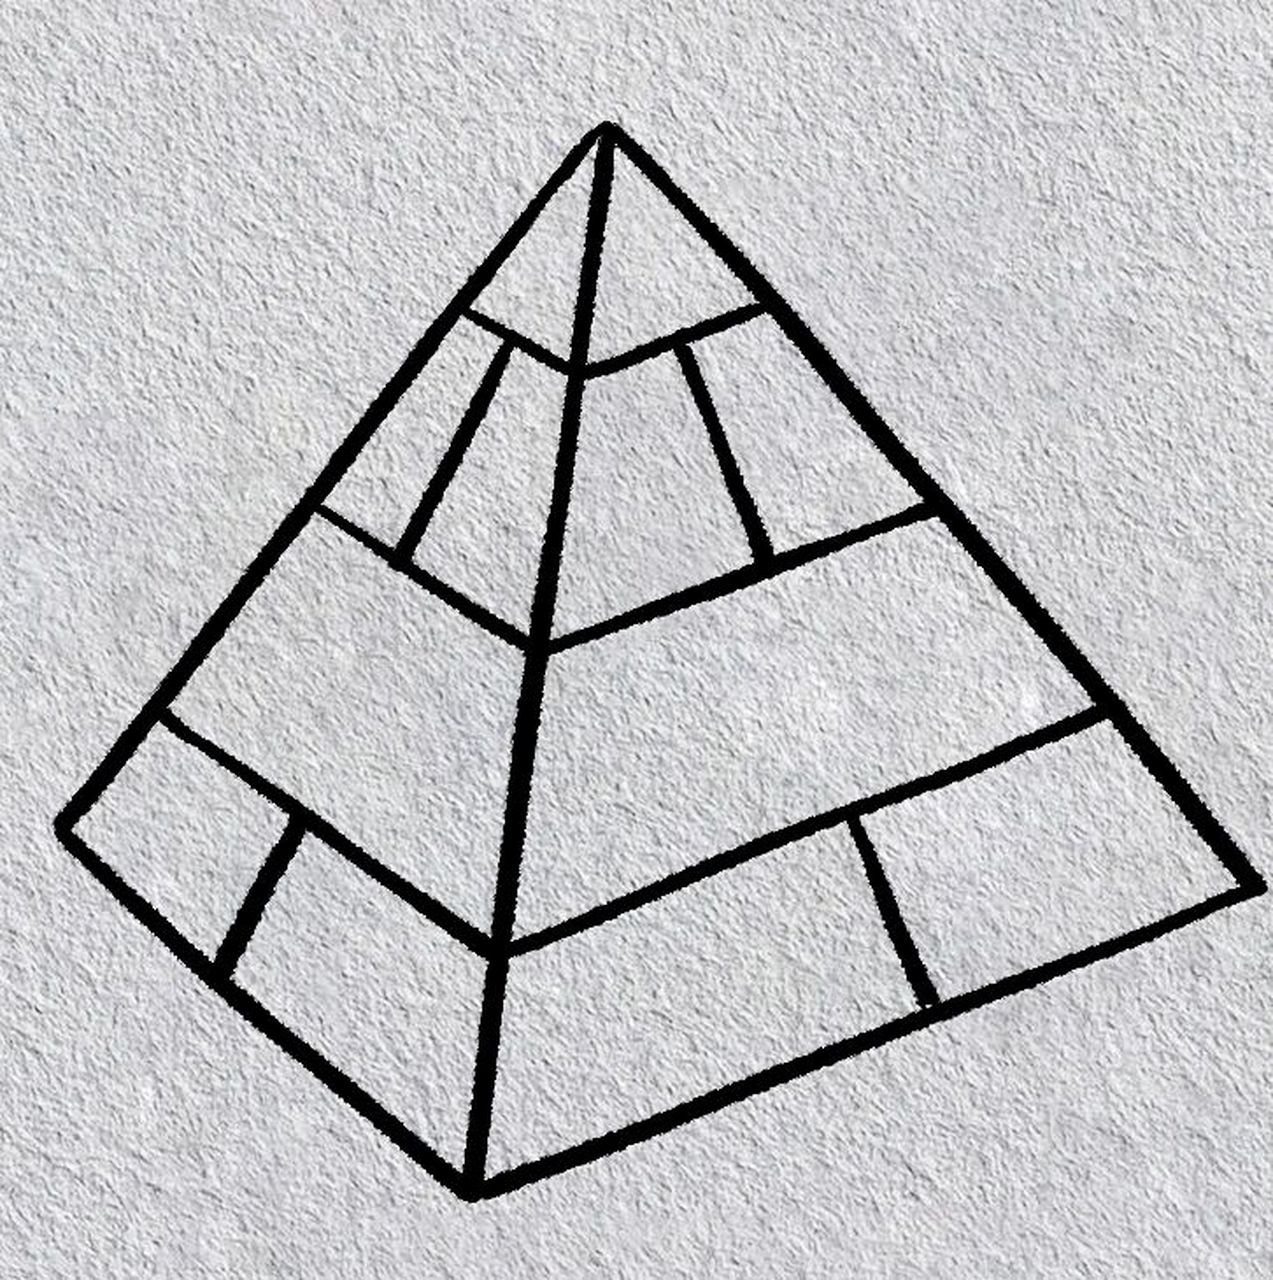 简笔画金字塔怎么画图片